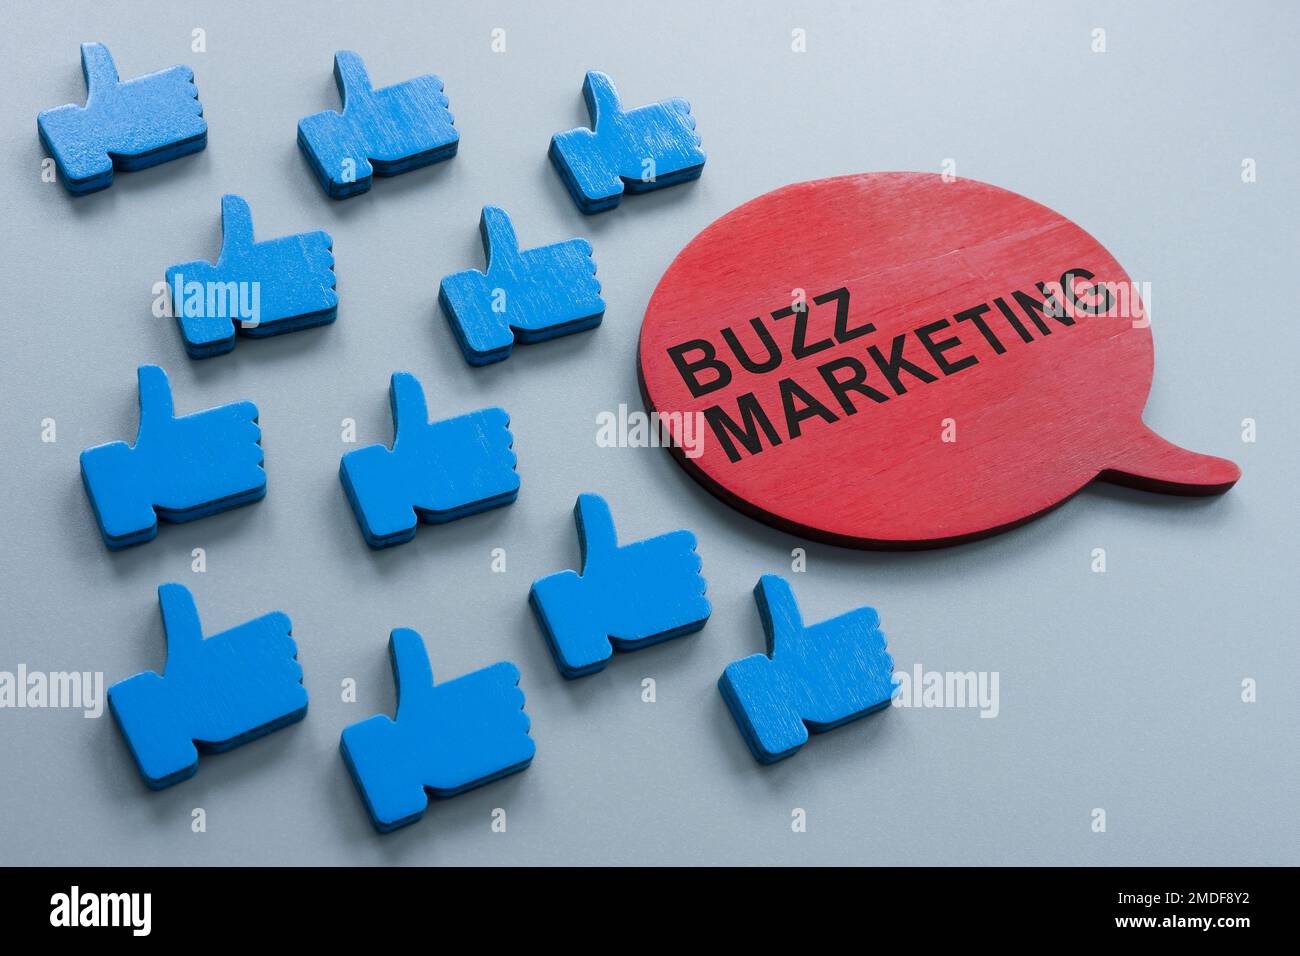 Likes symbols around and buzz marketing inscription. Stock Photo